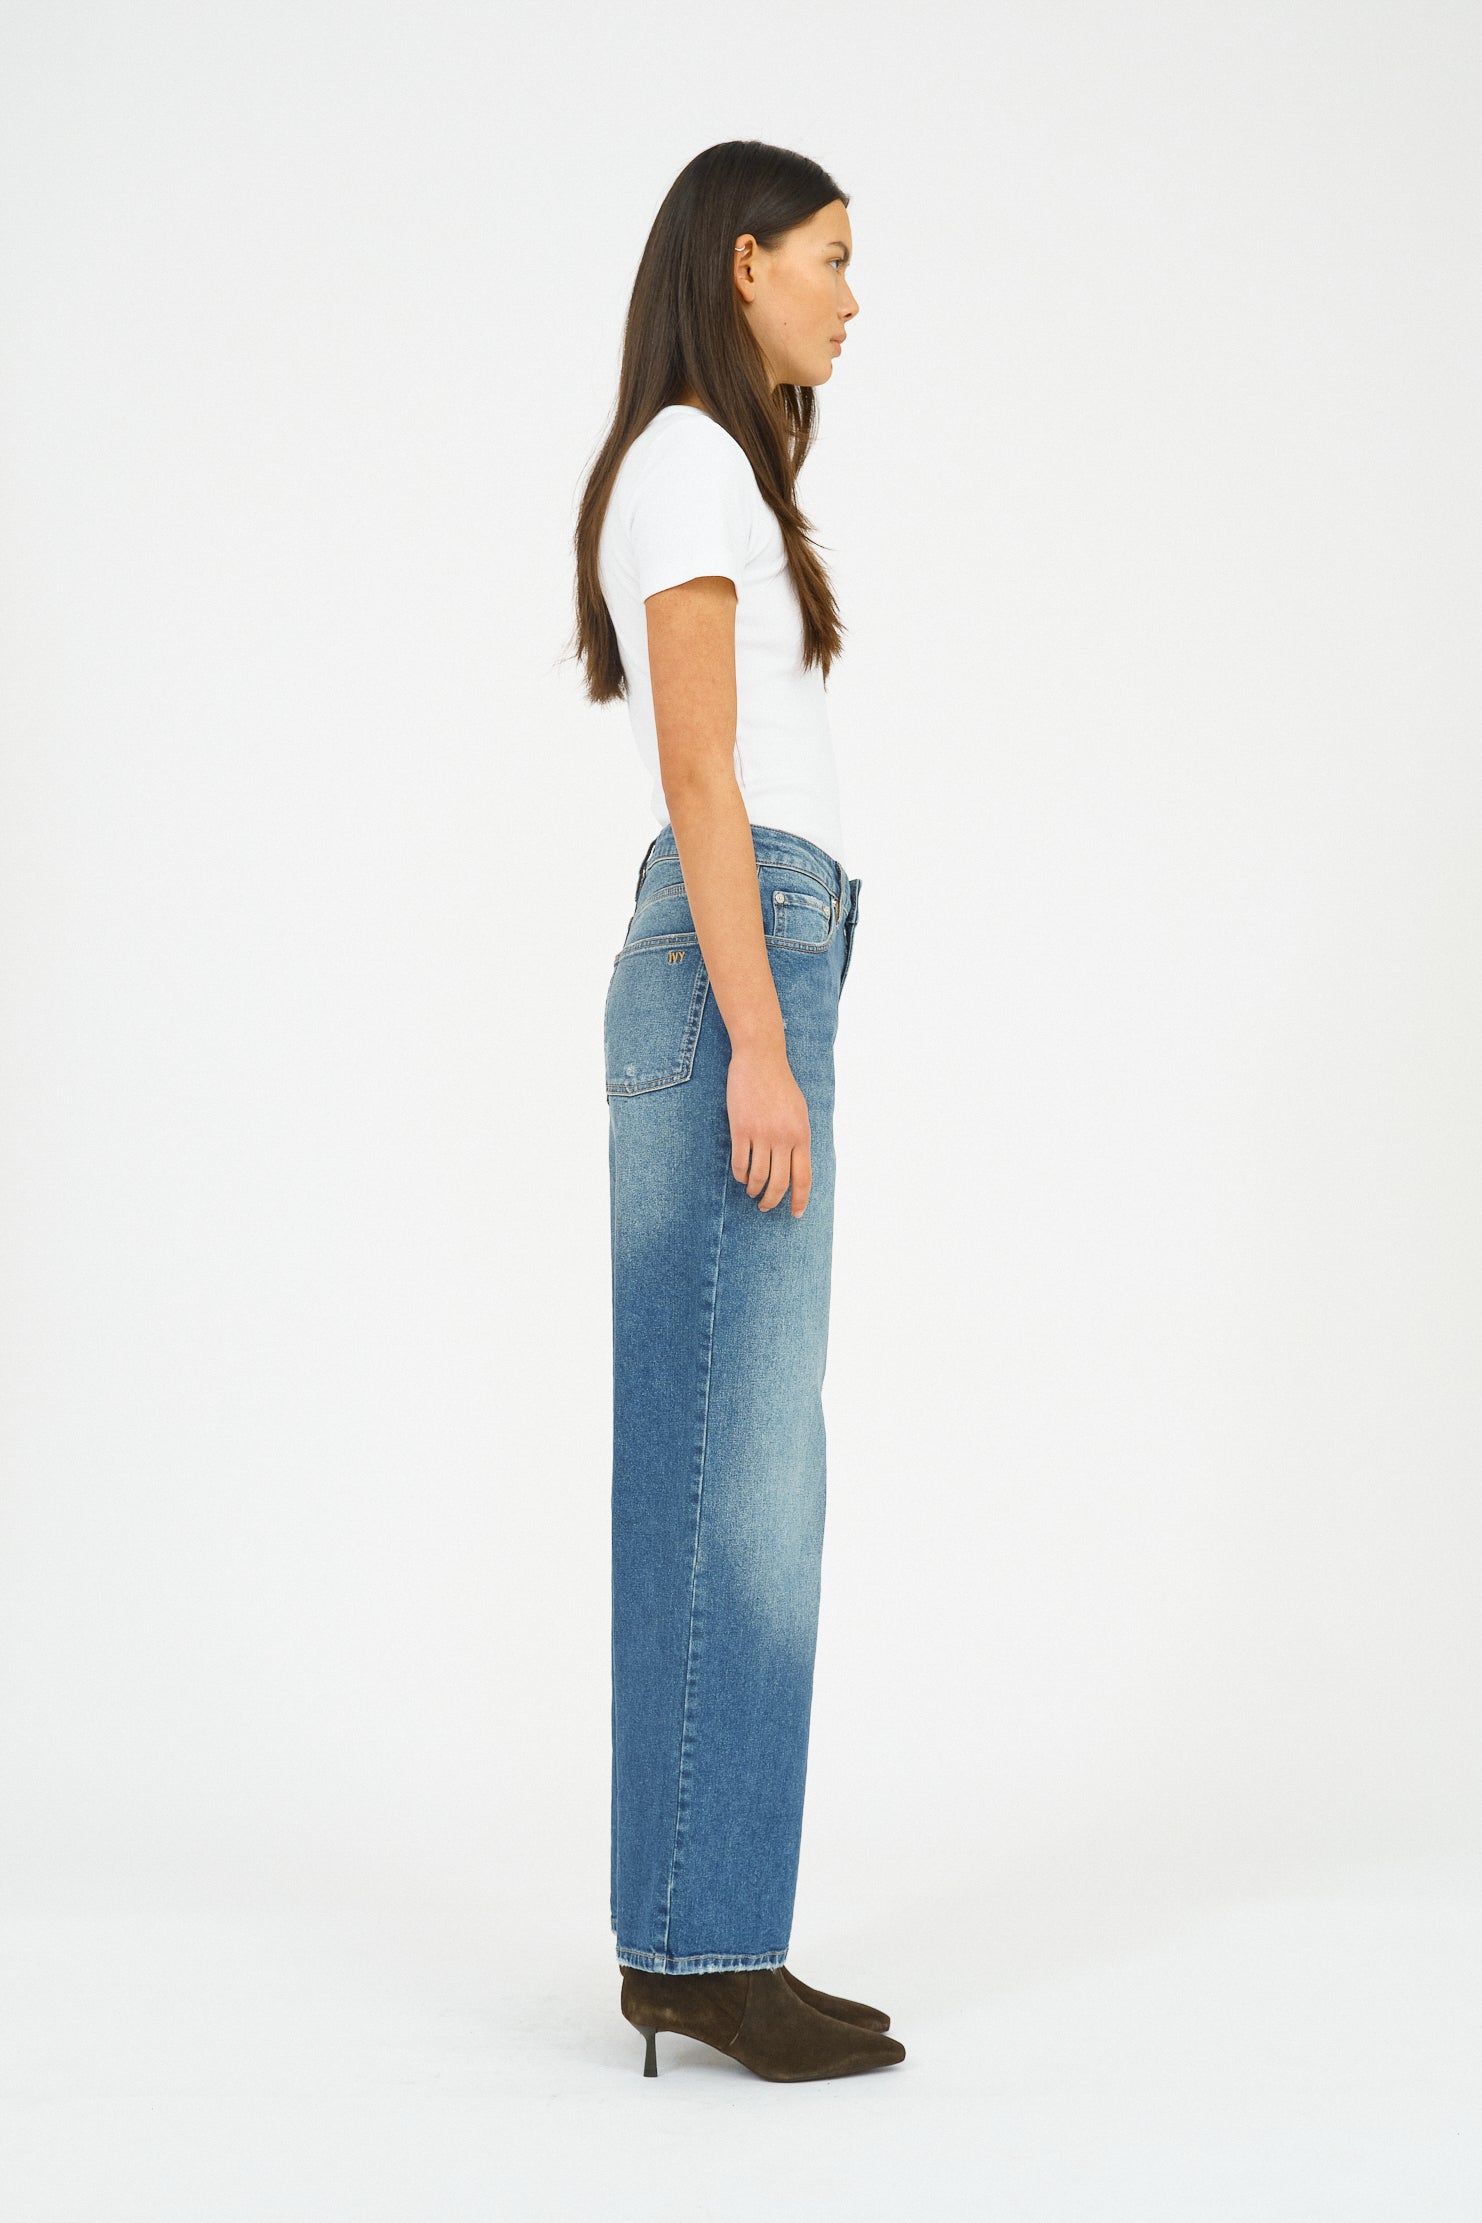 IVY Copenhagen IVY-Brooke Jeans Wash Saint Paul Jeans & Pants 51 Denim Blue